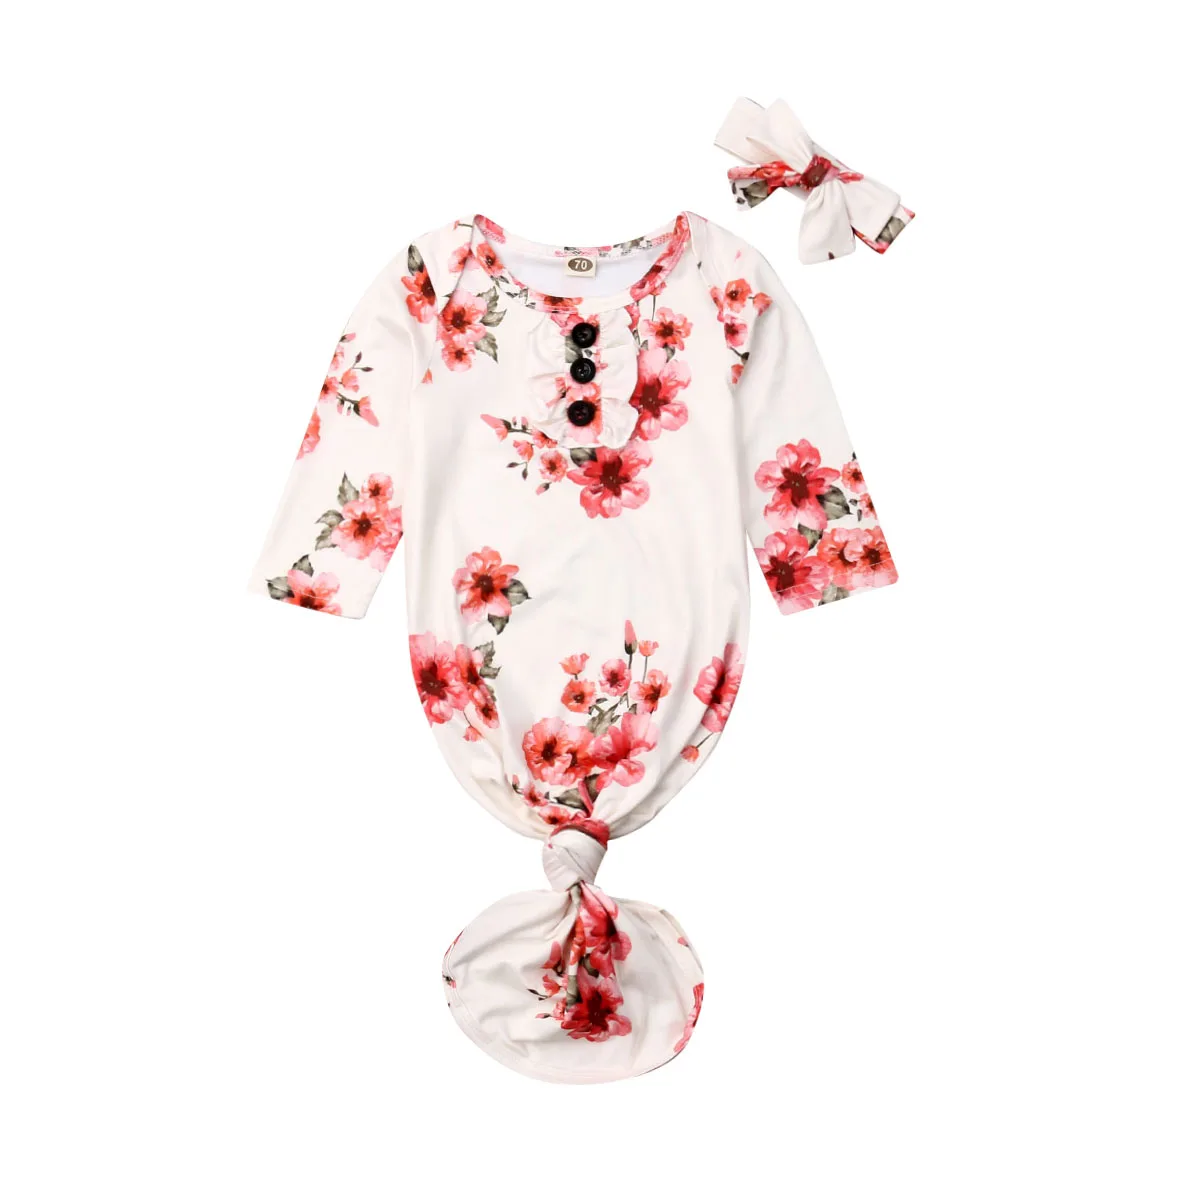 Спальный мешок с цветочным принтом для новорожденных девочек, пеленка для сна+ повязка на голову, комплект для малышей 0-12 месяцев, спальные мешки, комбинезоны, одежда - Цвет: Розовый